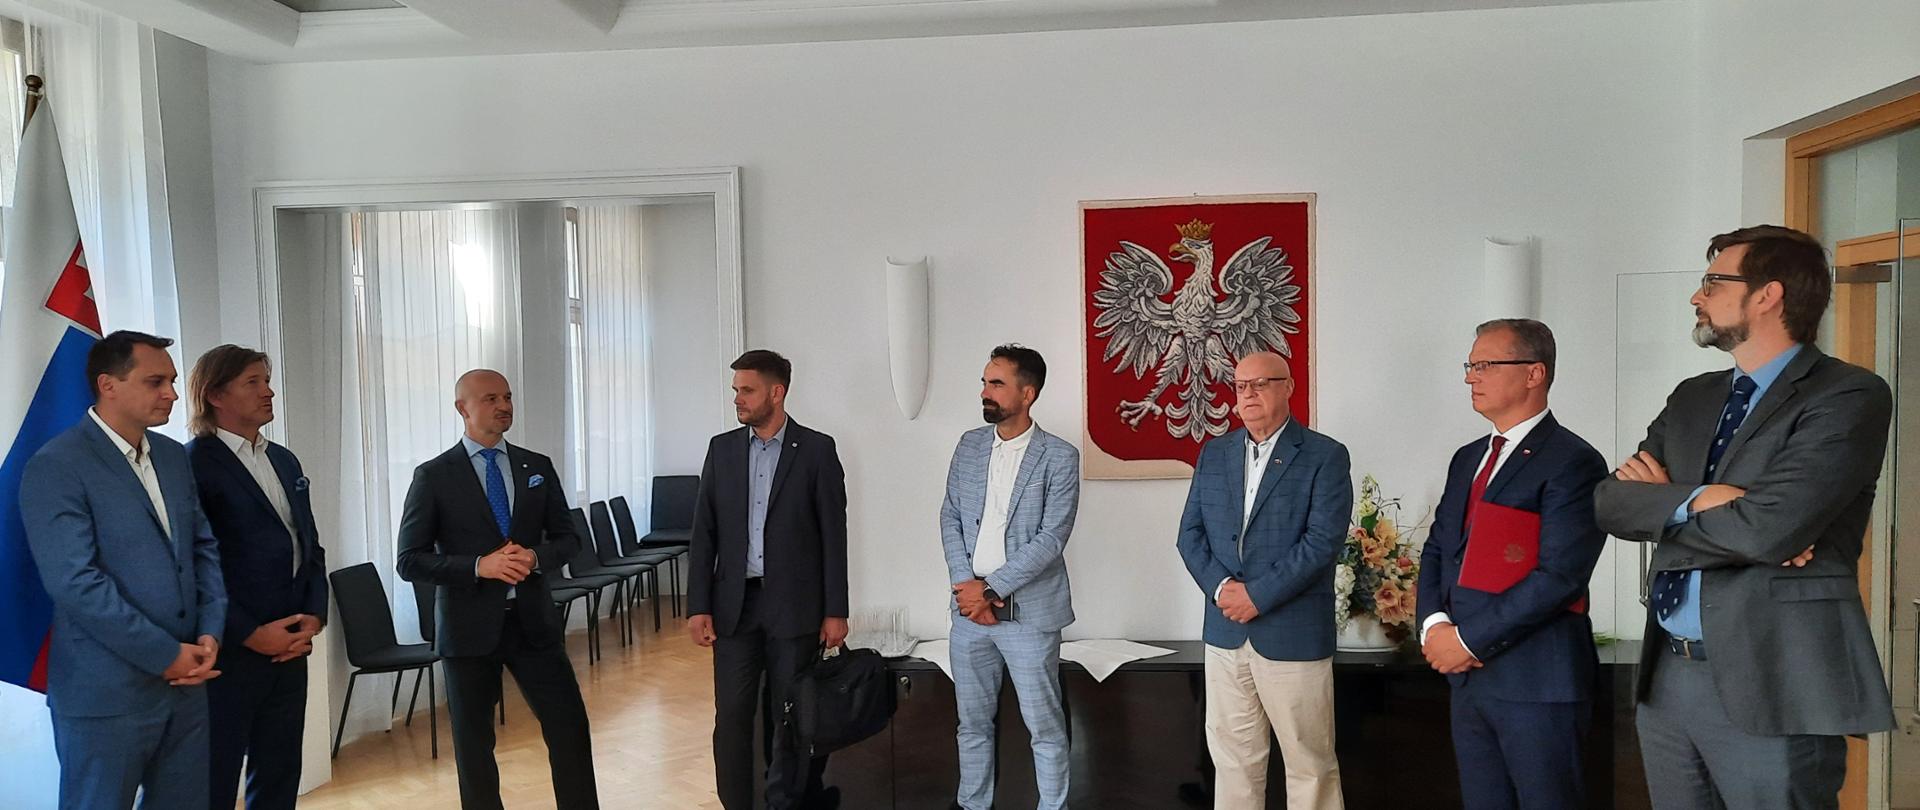 Spotkanie przedstawicieli oraz menadżerów polskich spółek działających w Republice Słowackiej